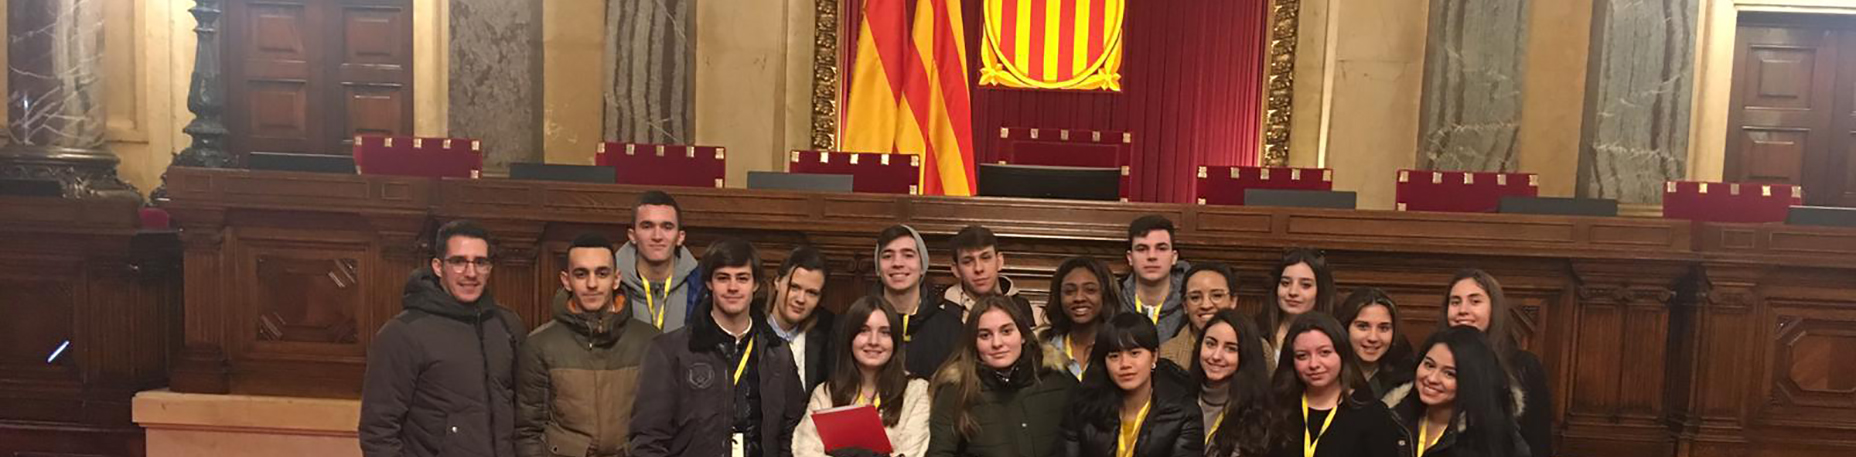 Visita al Parlament de Catalunya de los estudiantes de CFGS | Escuela Universitaria Formatic Barcelona